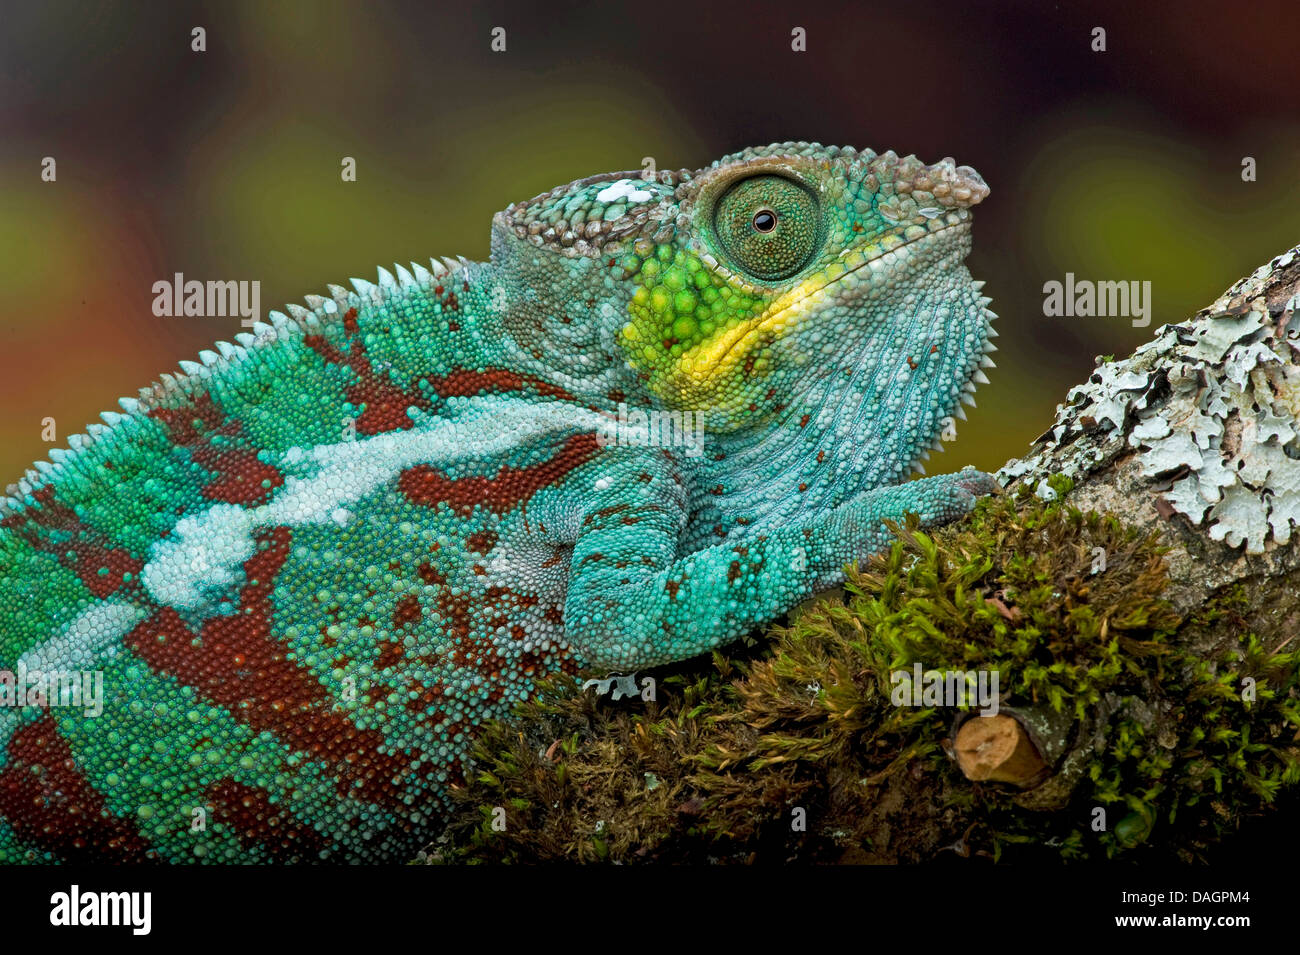 Panther chameleon (Furcifer pardalis, Chamaeleo pardalis), sitting on a twig Stock Photo